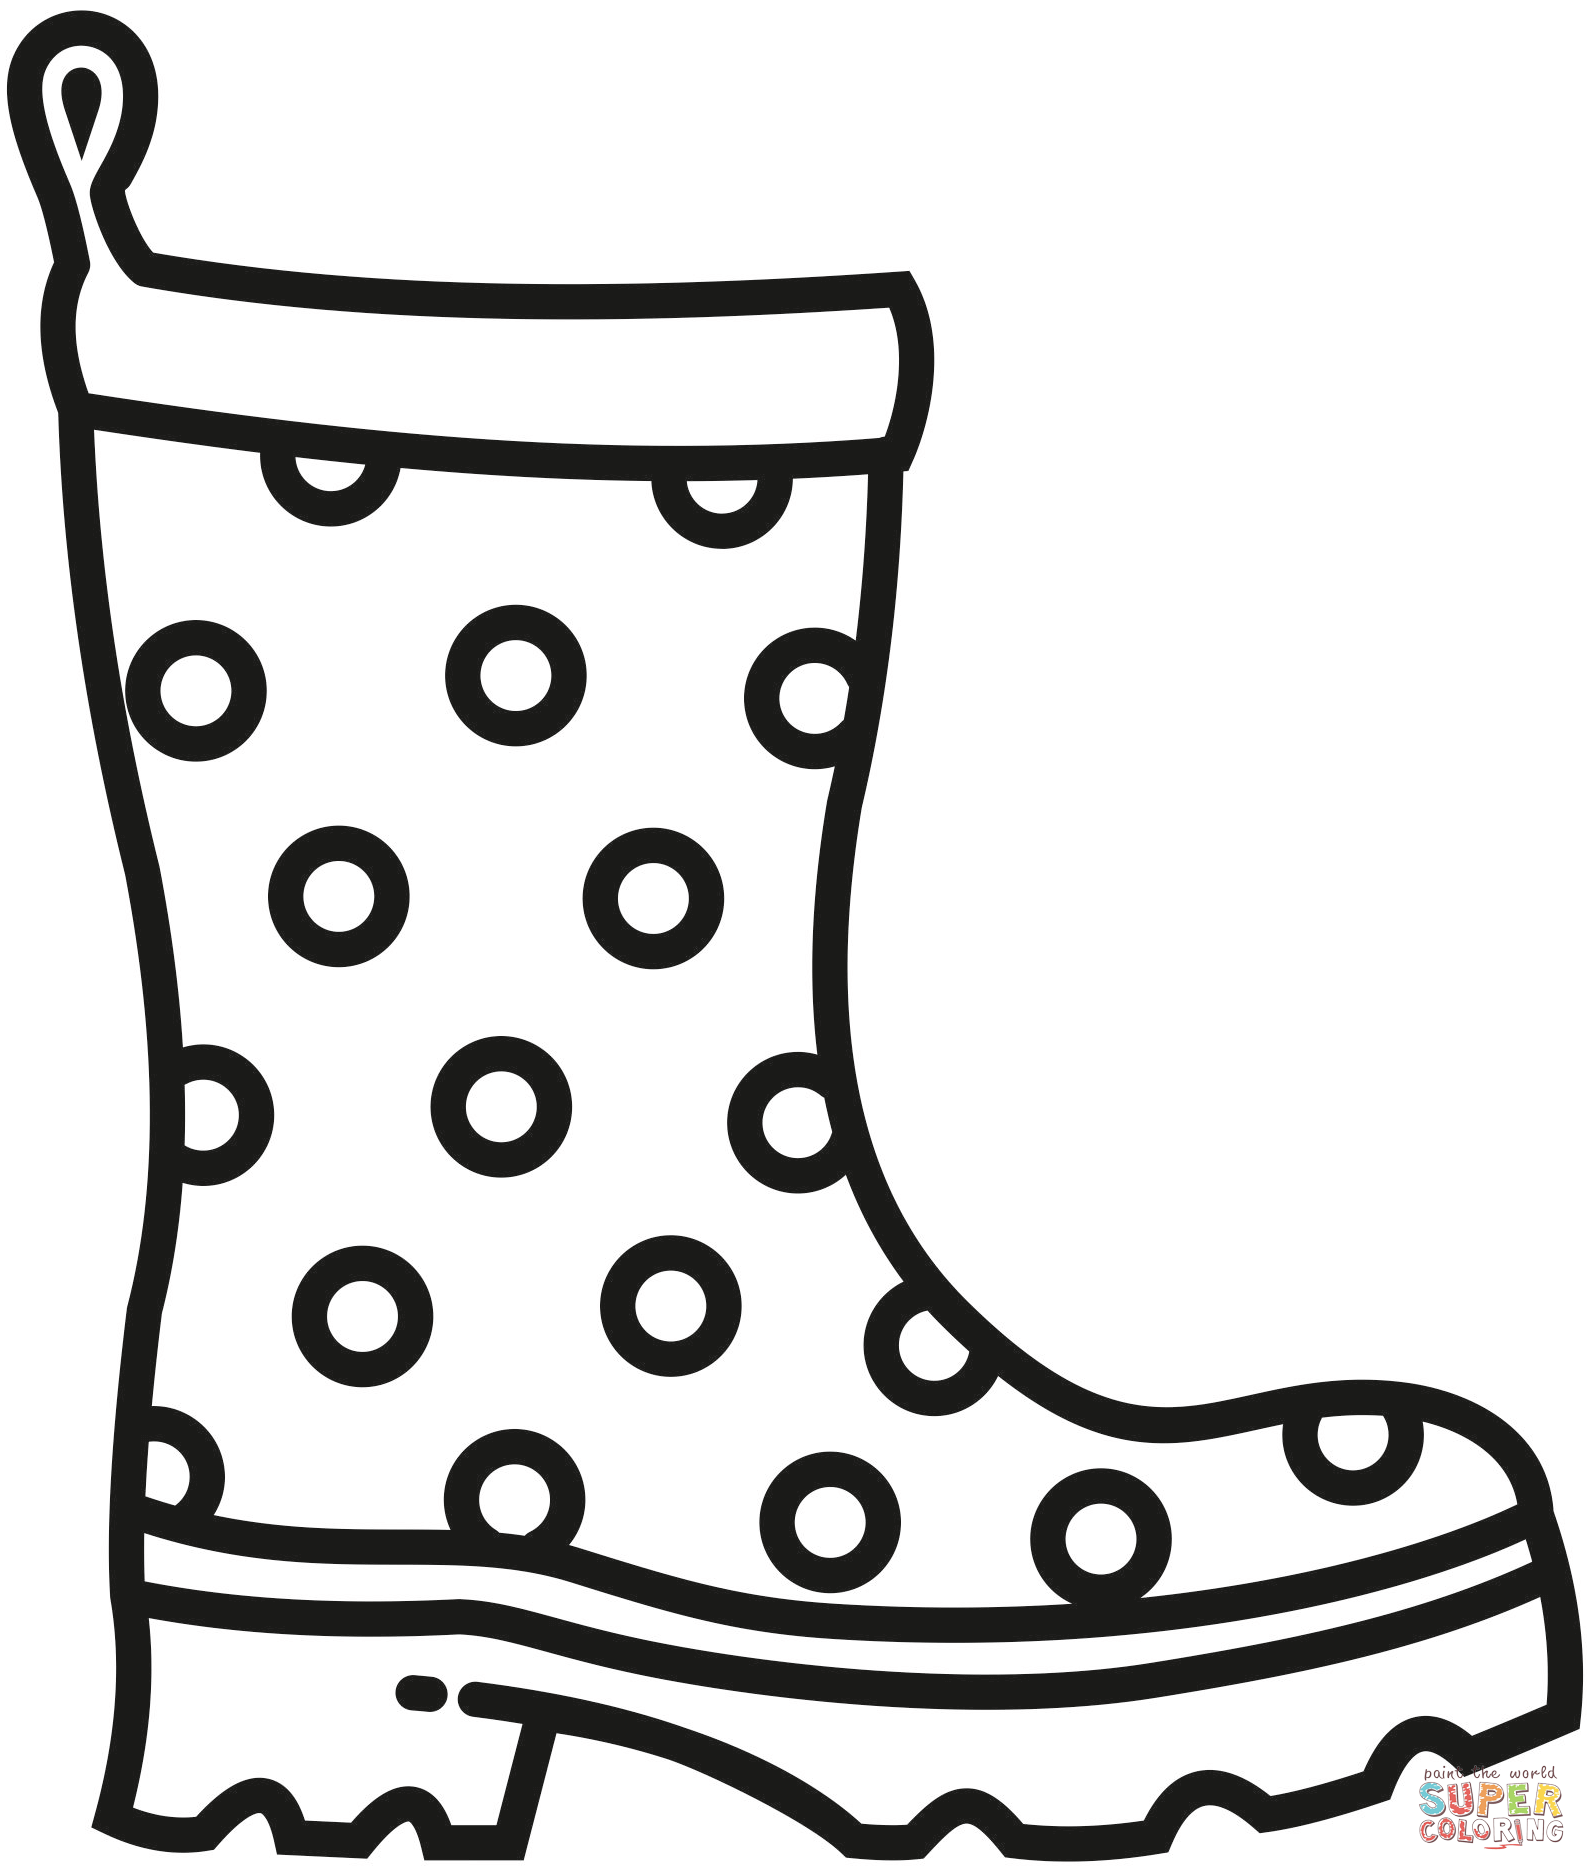 Dibujo de botas de lluvia para colorear dibujos para colorear imprimir gratis